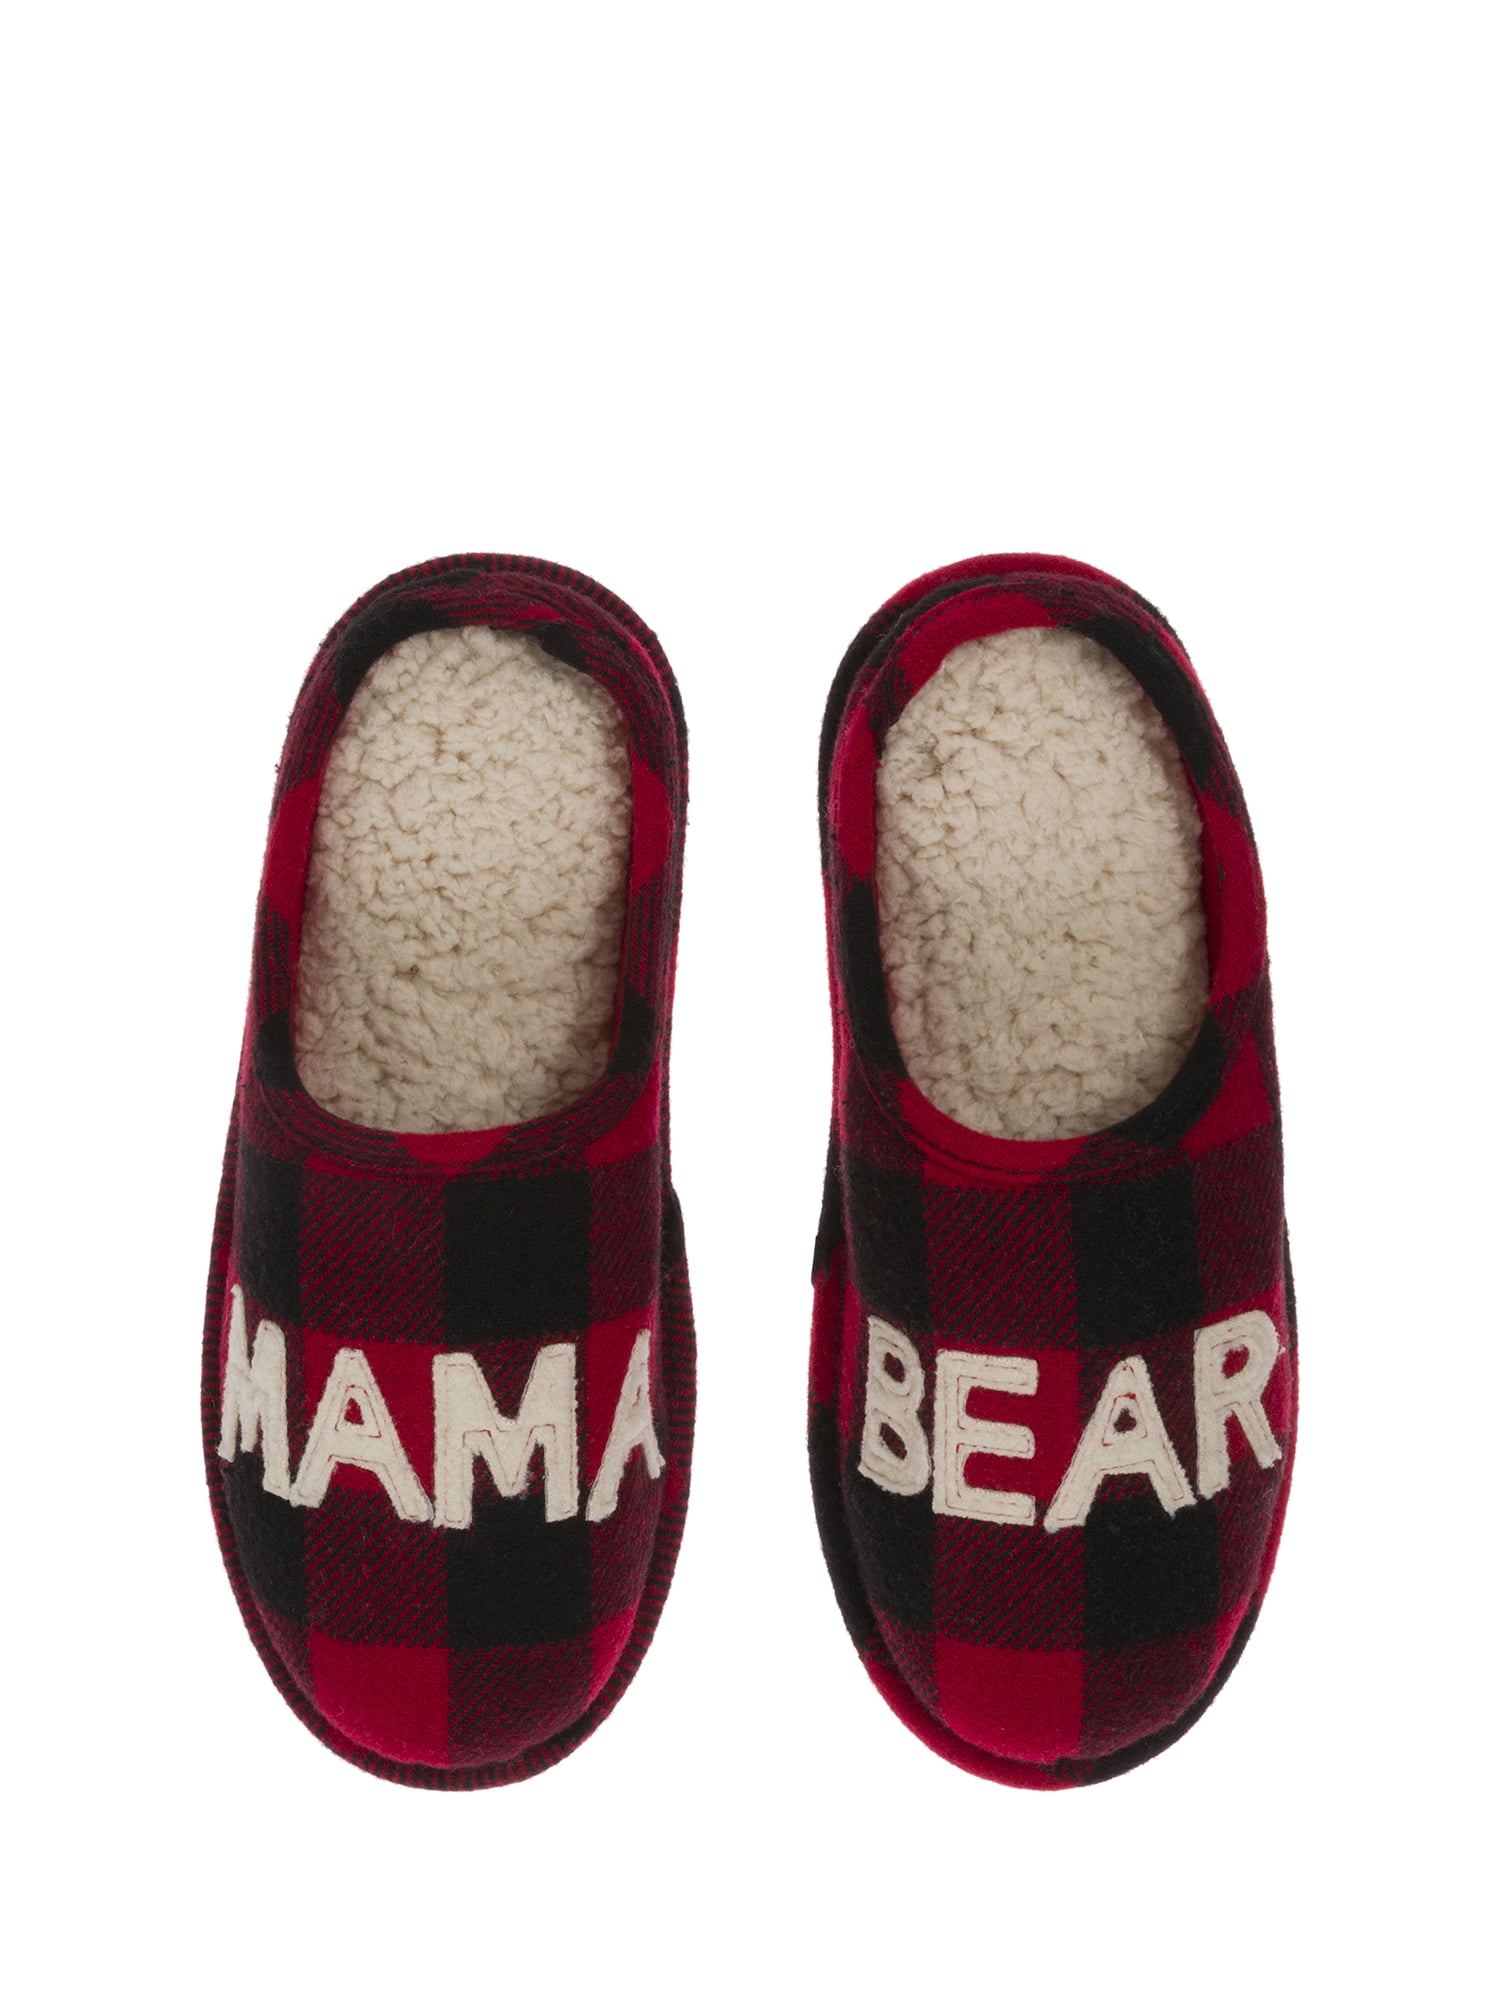 walmart bear slippers